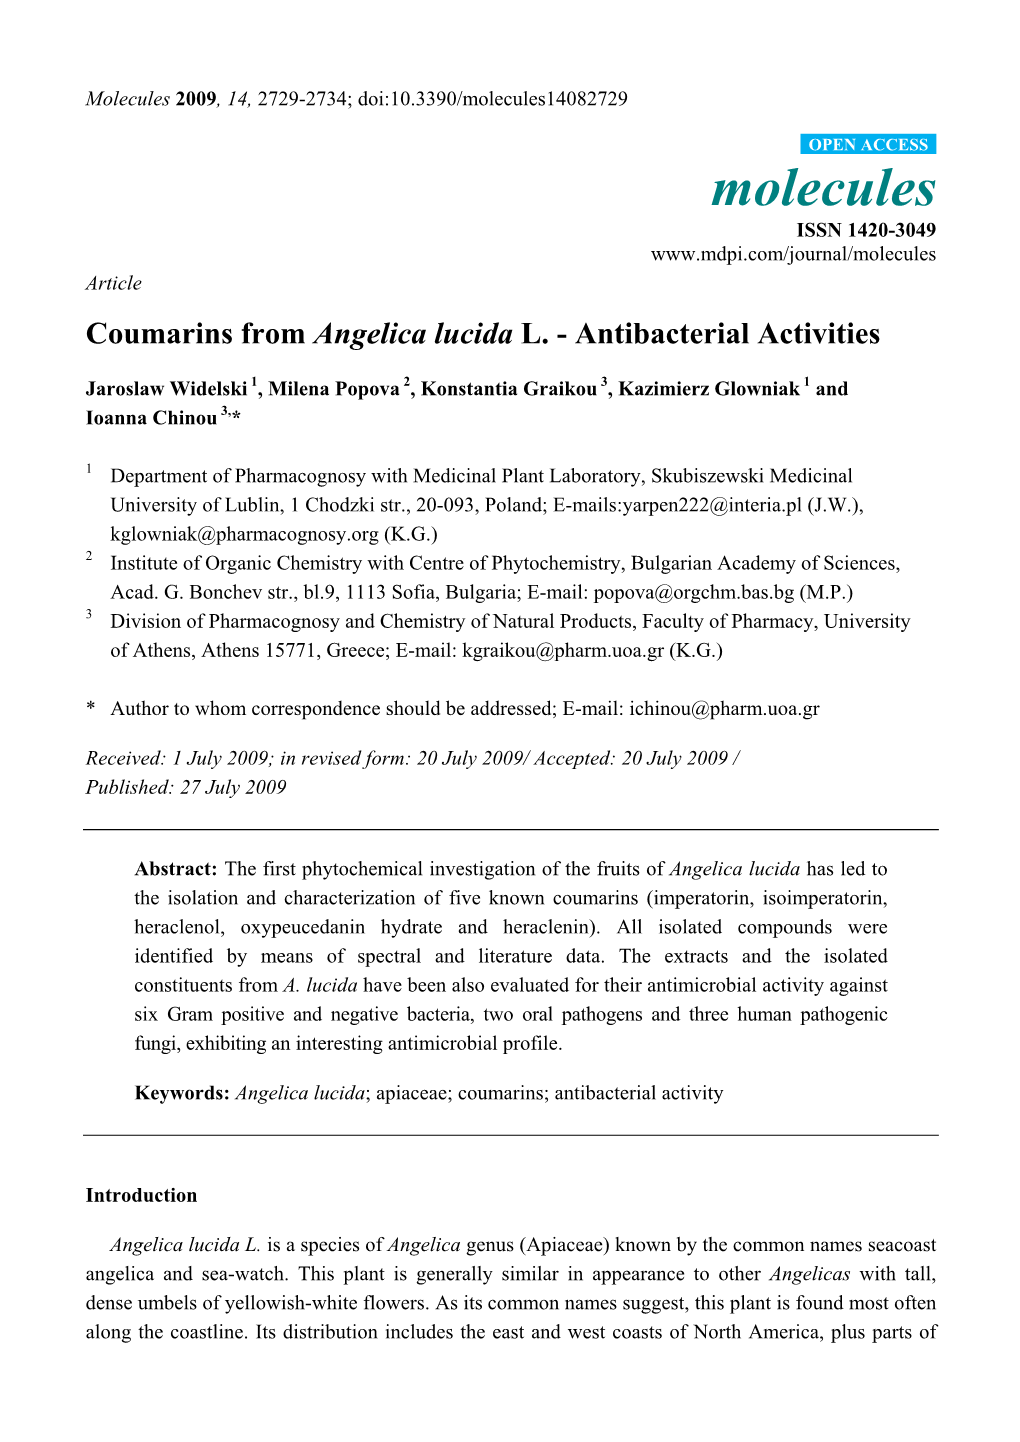 Coumarins from Angelica Lucida L. - Antibacterial Activities